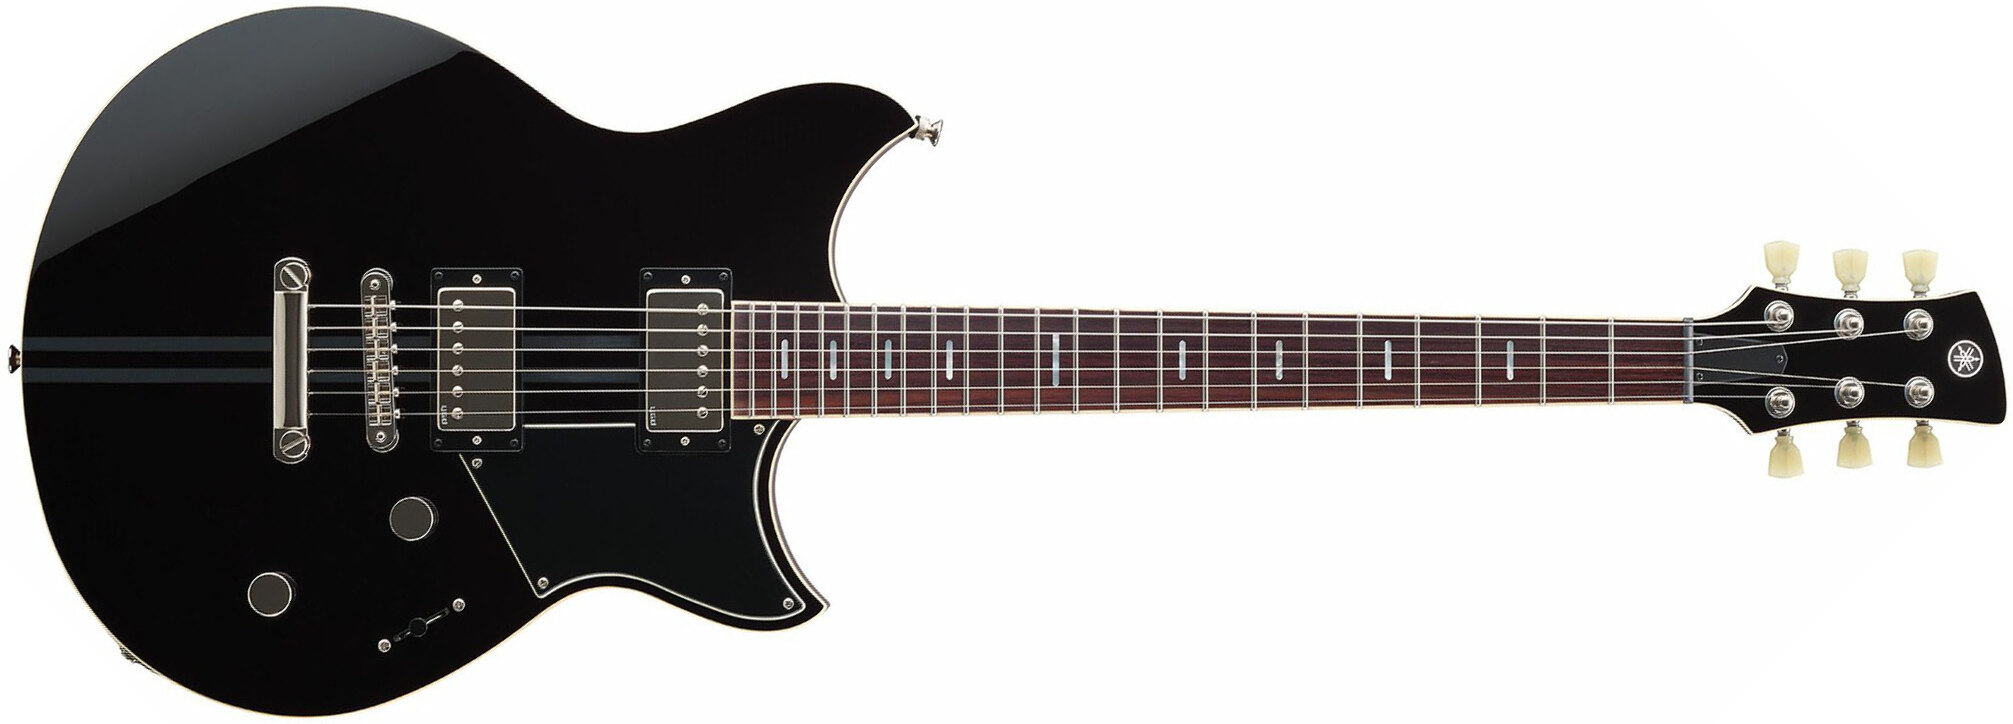 Yamaha Rss20 Revstar Standard Hh Ht Rw - Black - Guitarra eléctrica de doble corte - Main picture